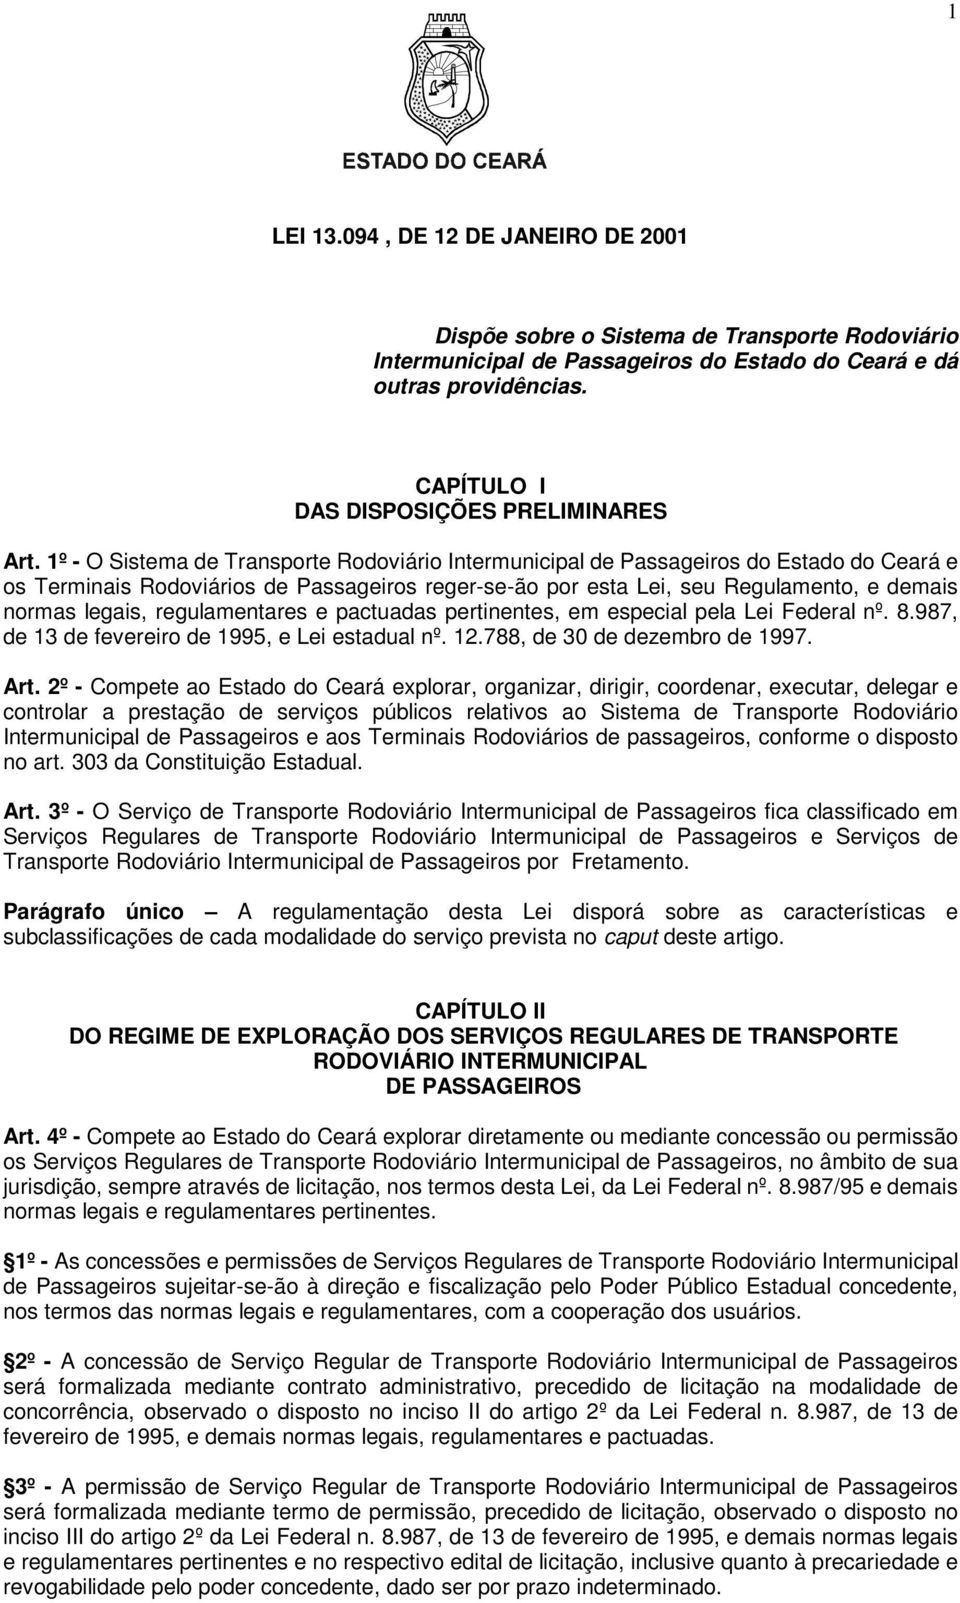 1º - O Sistema de Transporte Rodoviário Intermunicipal de Passageiros do Estado do Ceará e os Terminais Rodoviários de Passageiros reger-se-ão por esta Lei, seu Regulamento, e demais normas legais,